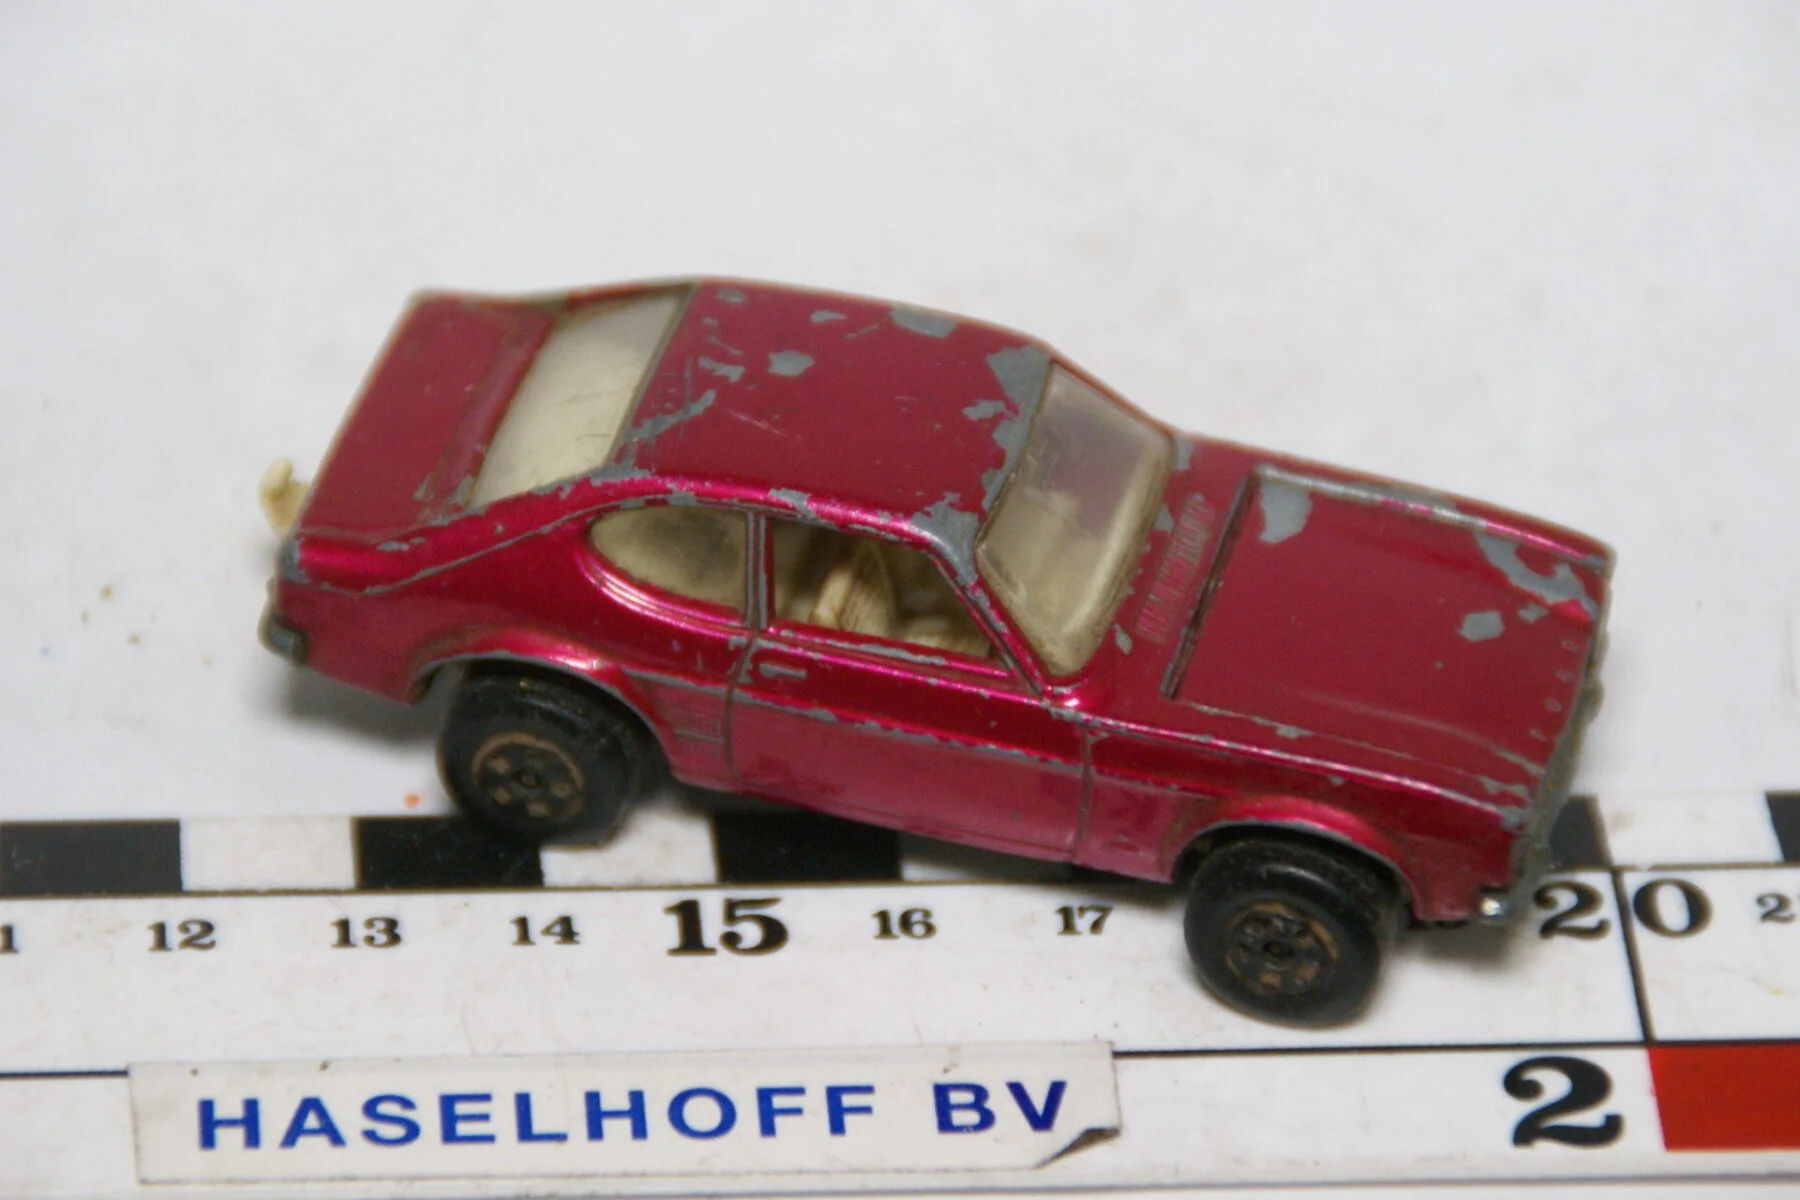 DSC07856 miniatuur 1970 Ford Capri rood ca 1op70 Matcbox nr 54